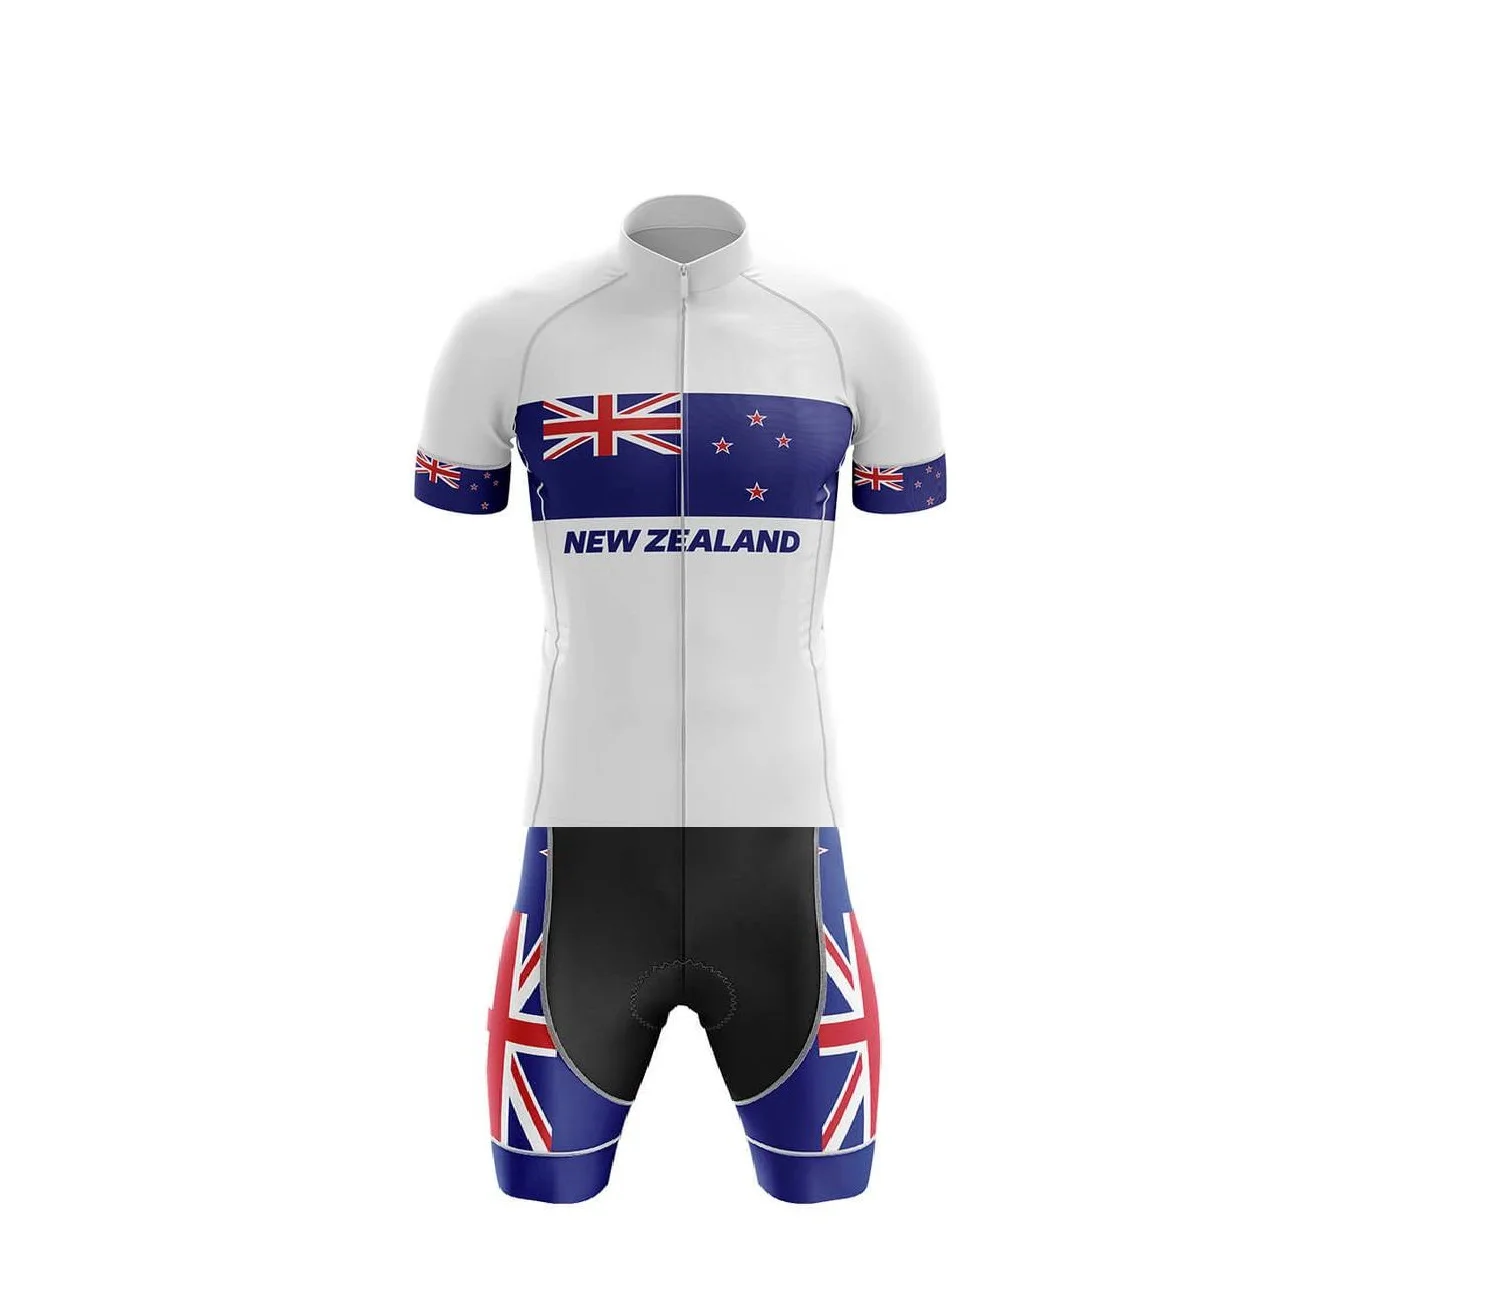 

Мужская одежда для велоспорта с лазерной резкой, одежда для велоспорта, трикотажная одежда, облегающий костюм с мощным ремешком, размер национальной сборной Новой Зеландии